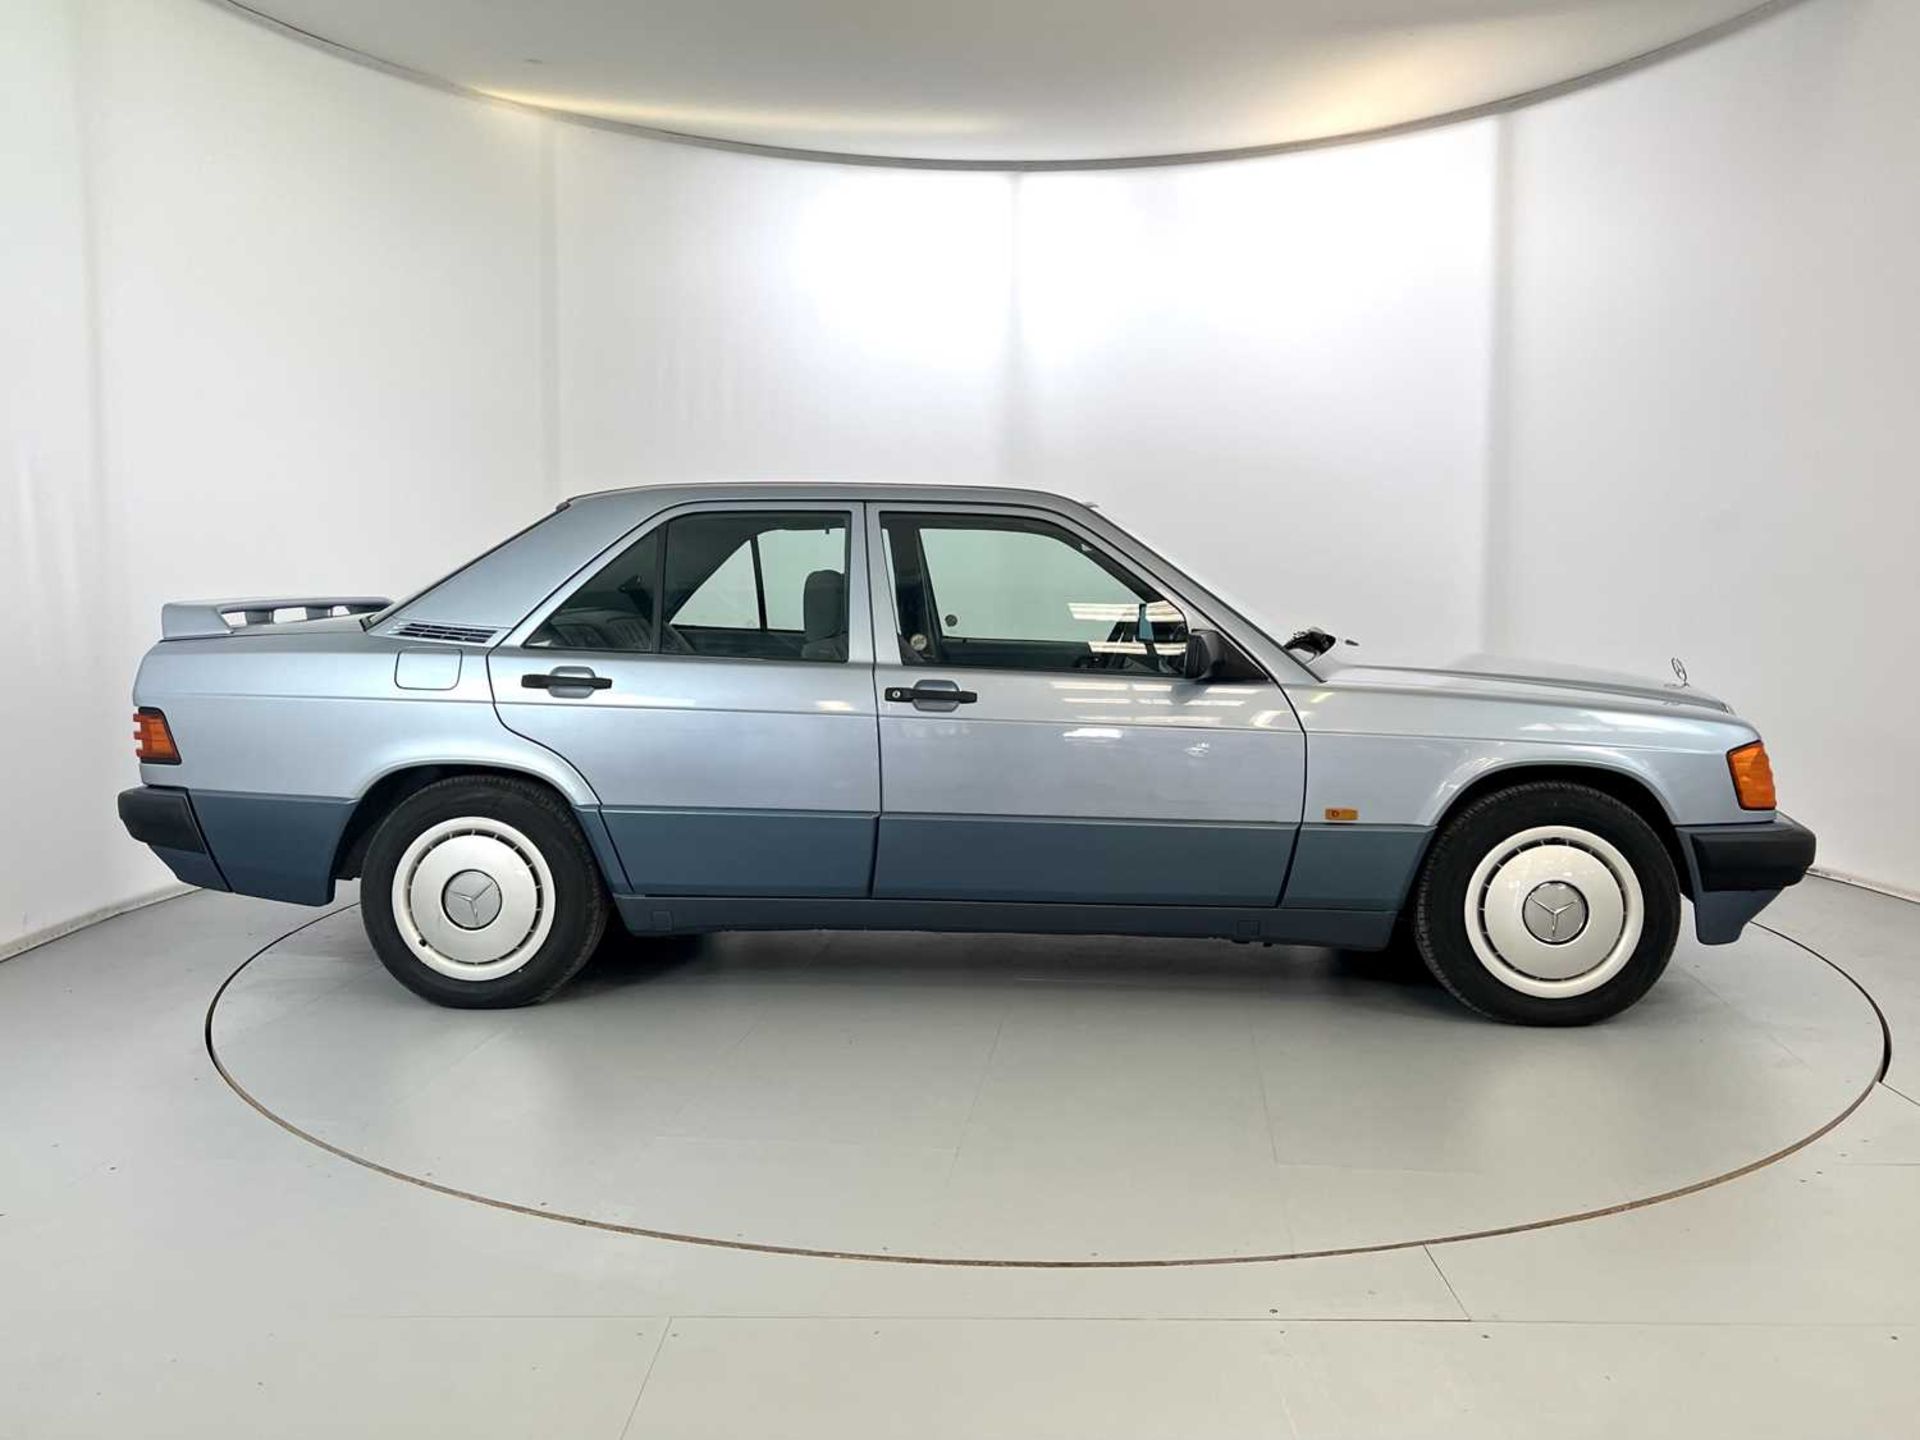 1990 Mercedes-Benz 190E - Image 11 of 32